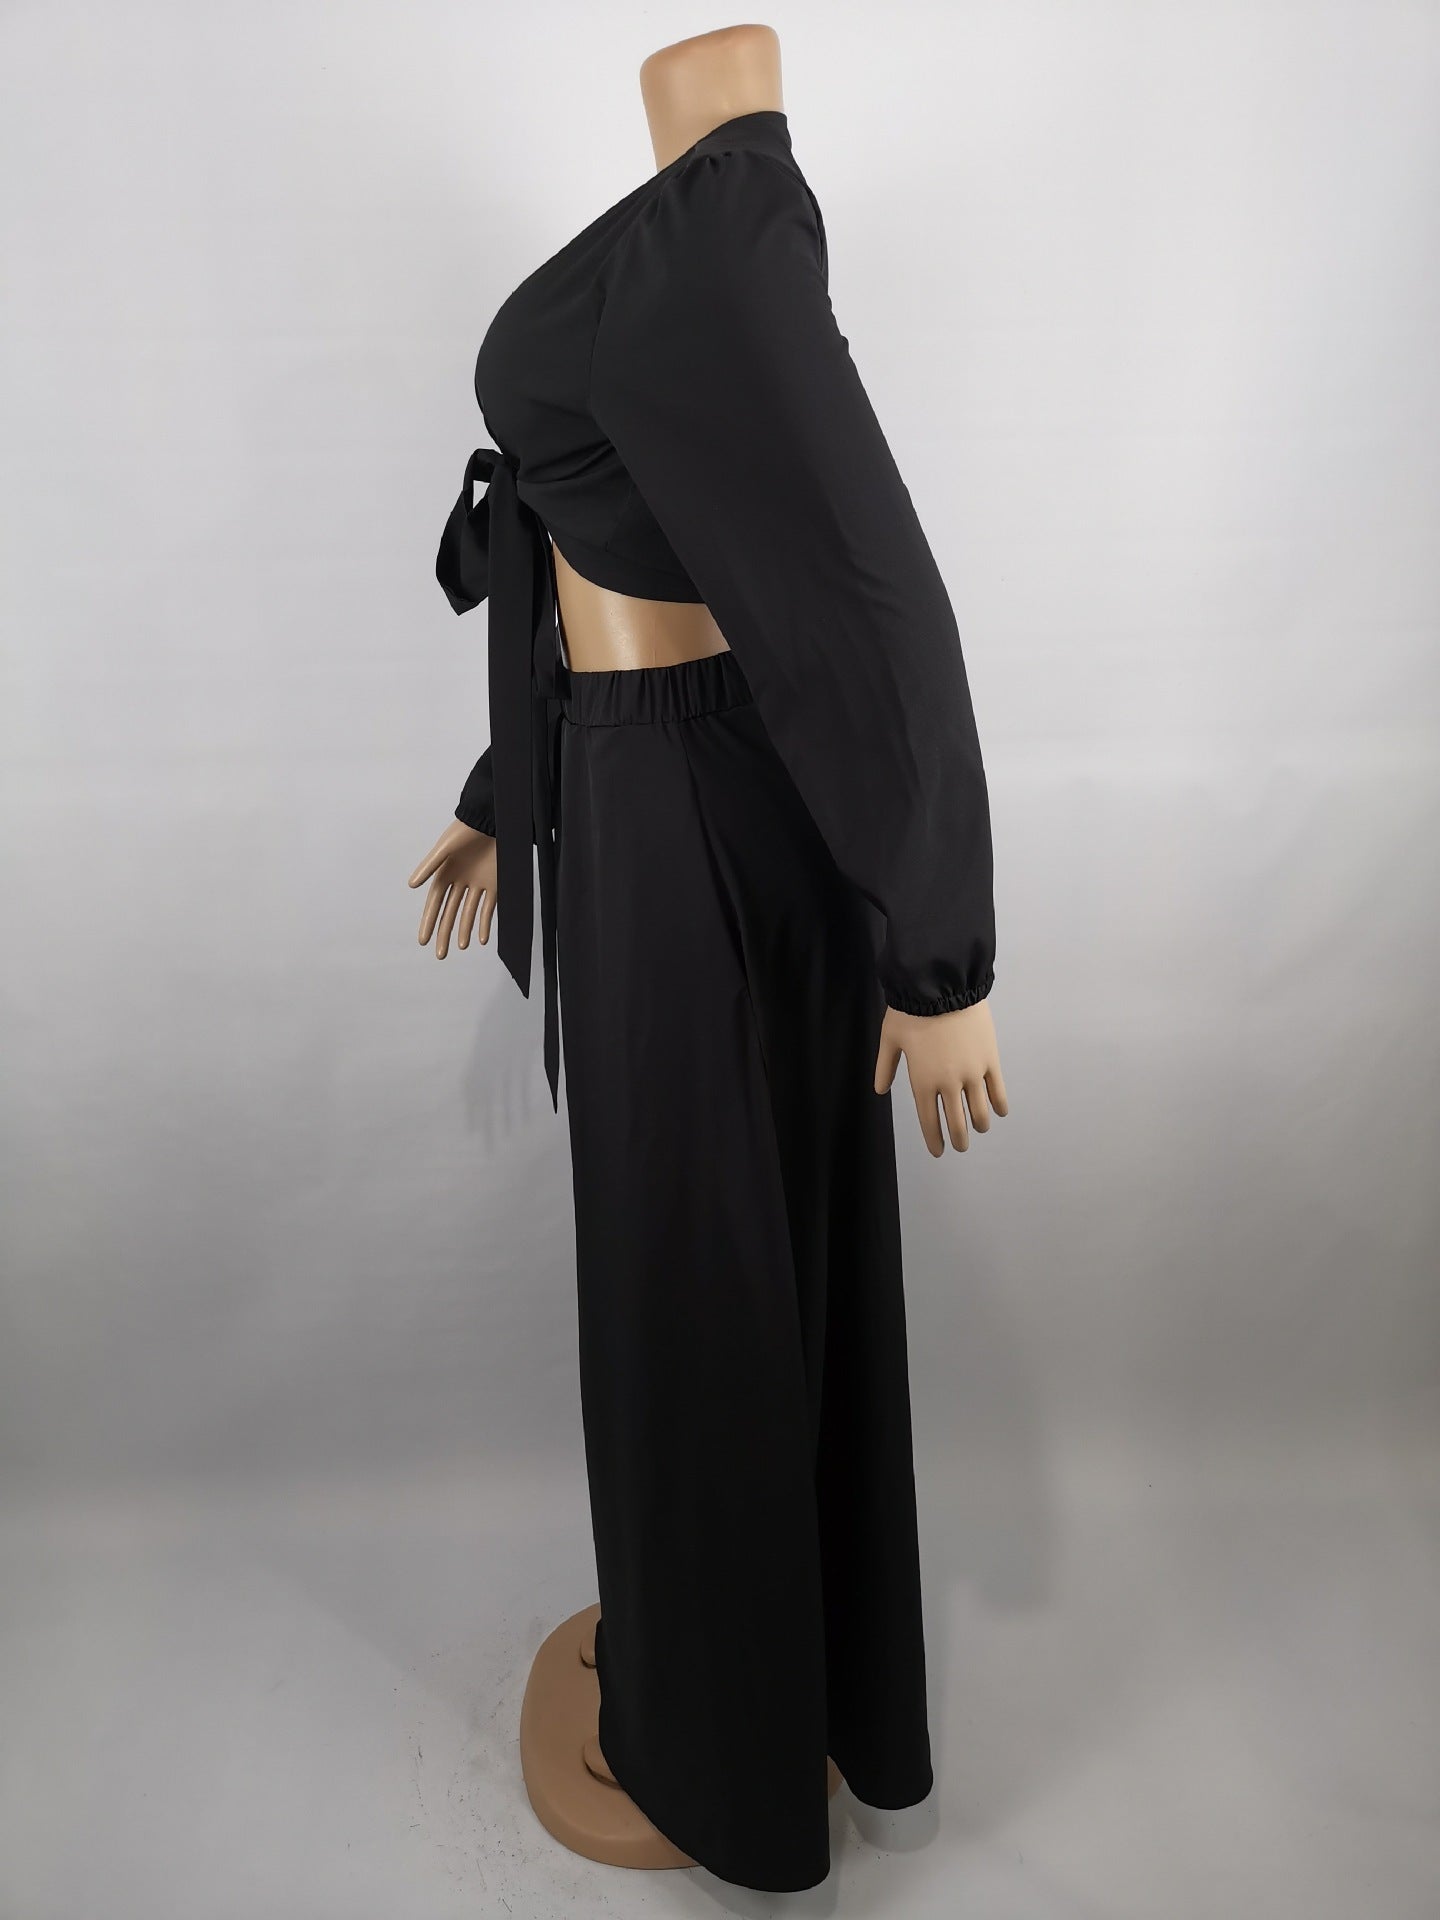 Silk Press Crop Top + Skirt Set XL-5XL